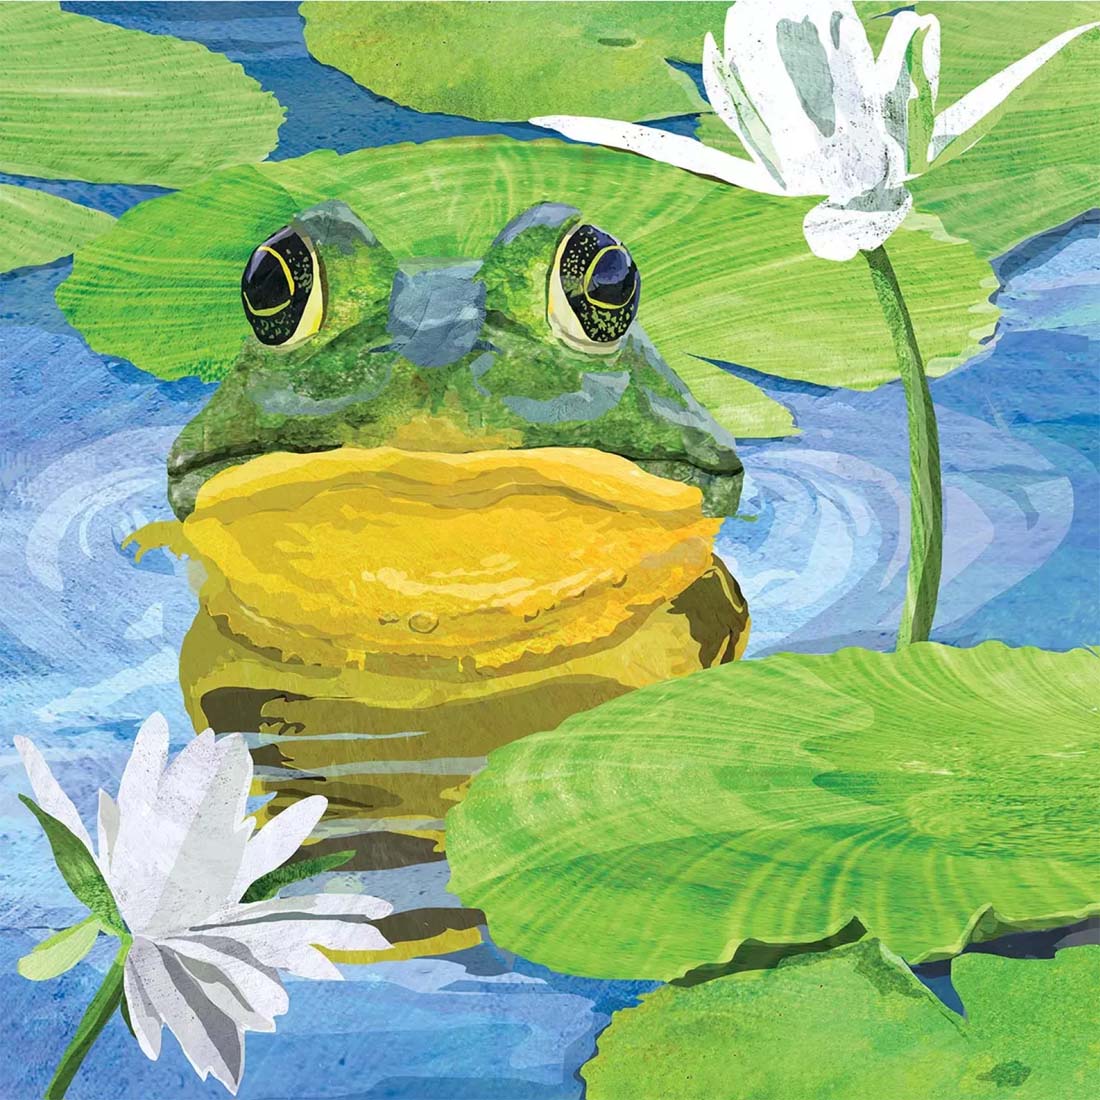 Сказка зеленый лягушонок и желтая кувшинка читать онлайн бесплатно